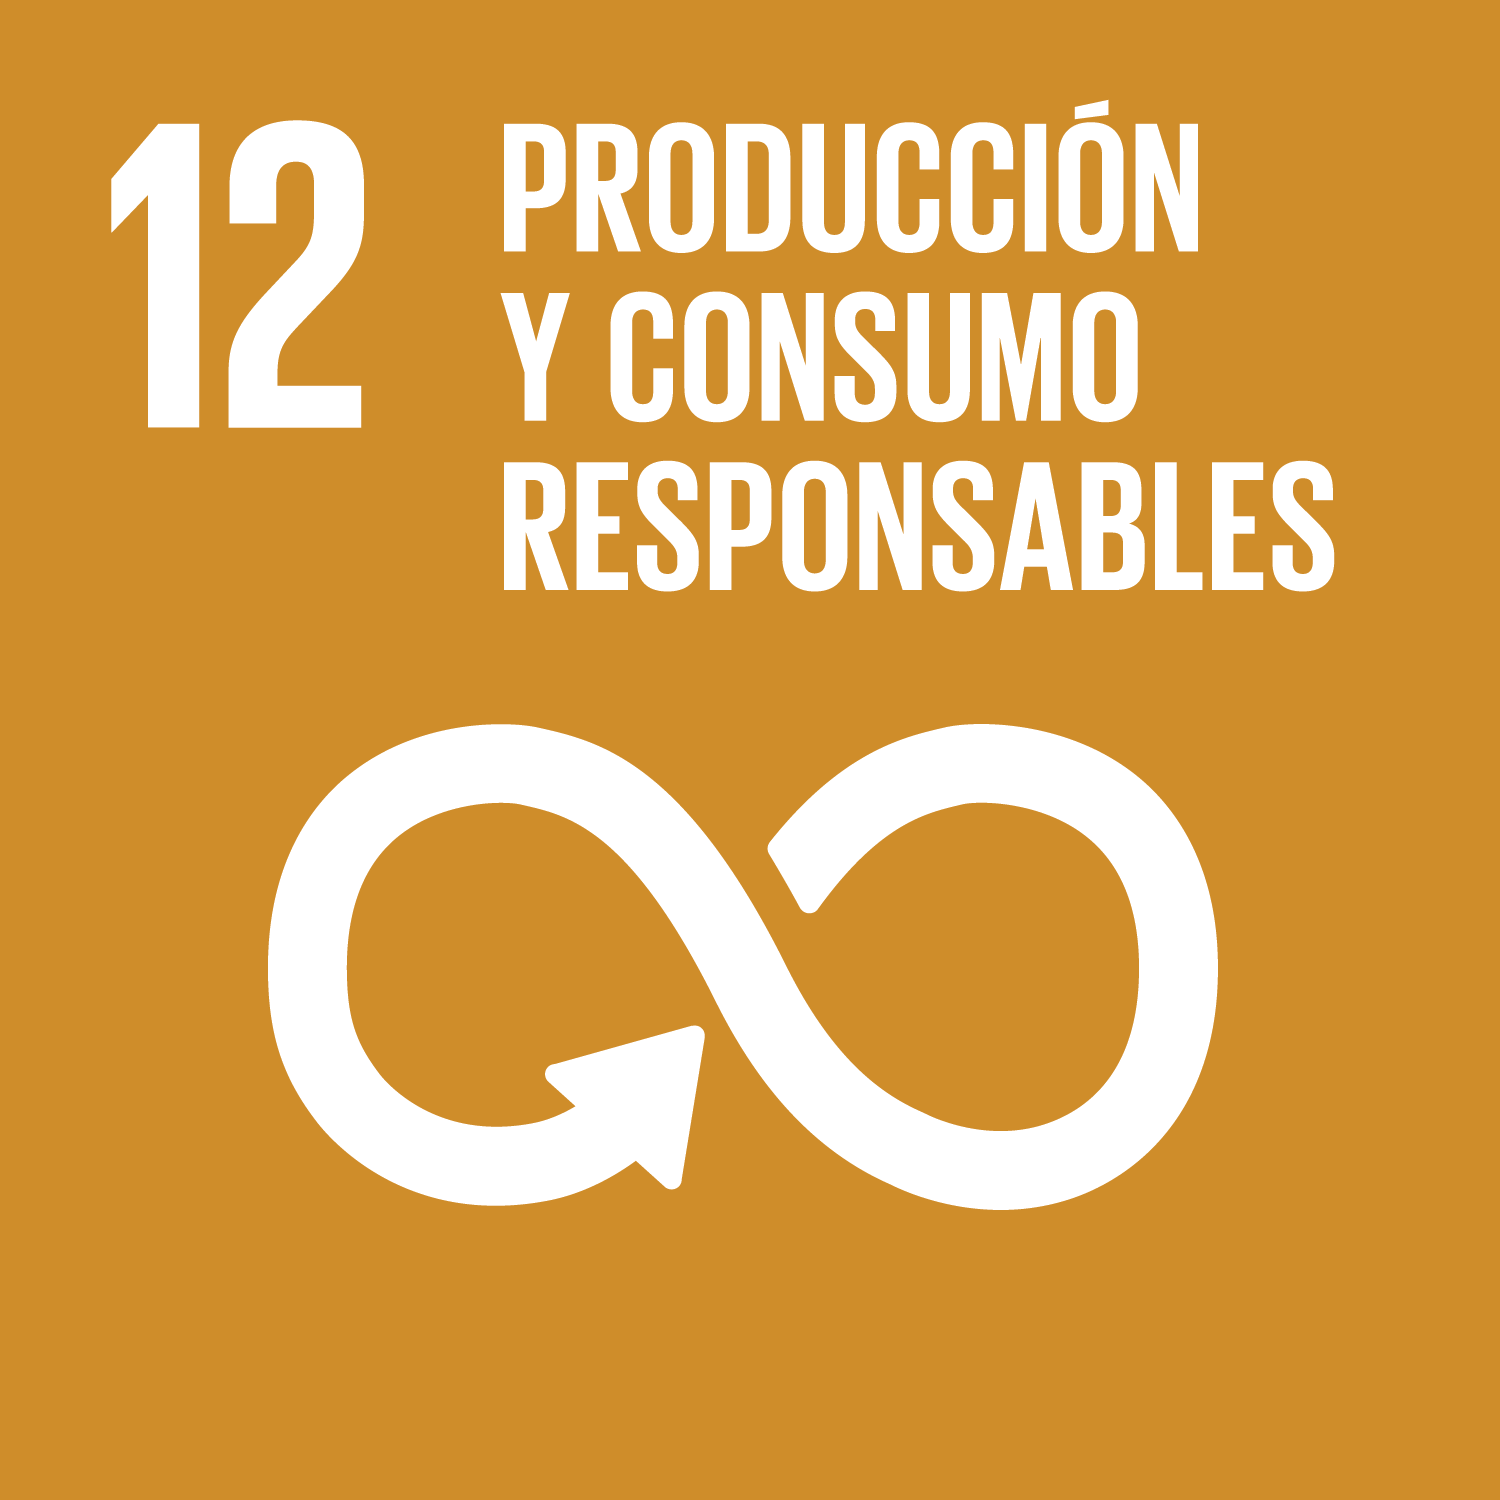 ODS de la Agenda 2030 Producción y Consumo Responsables